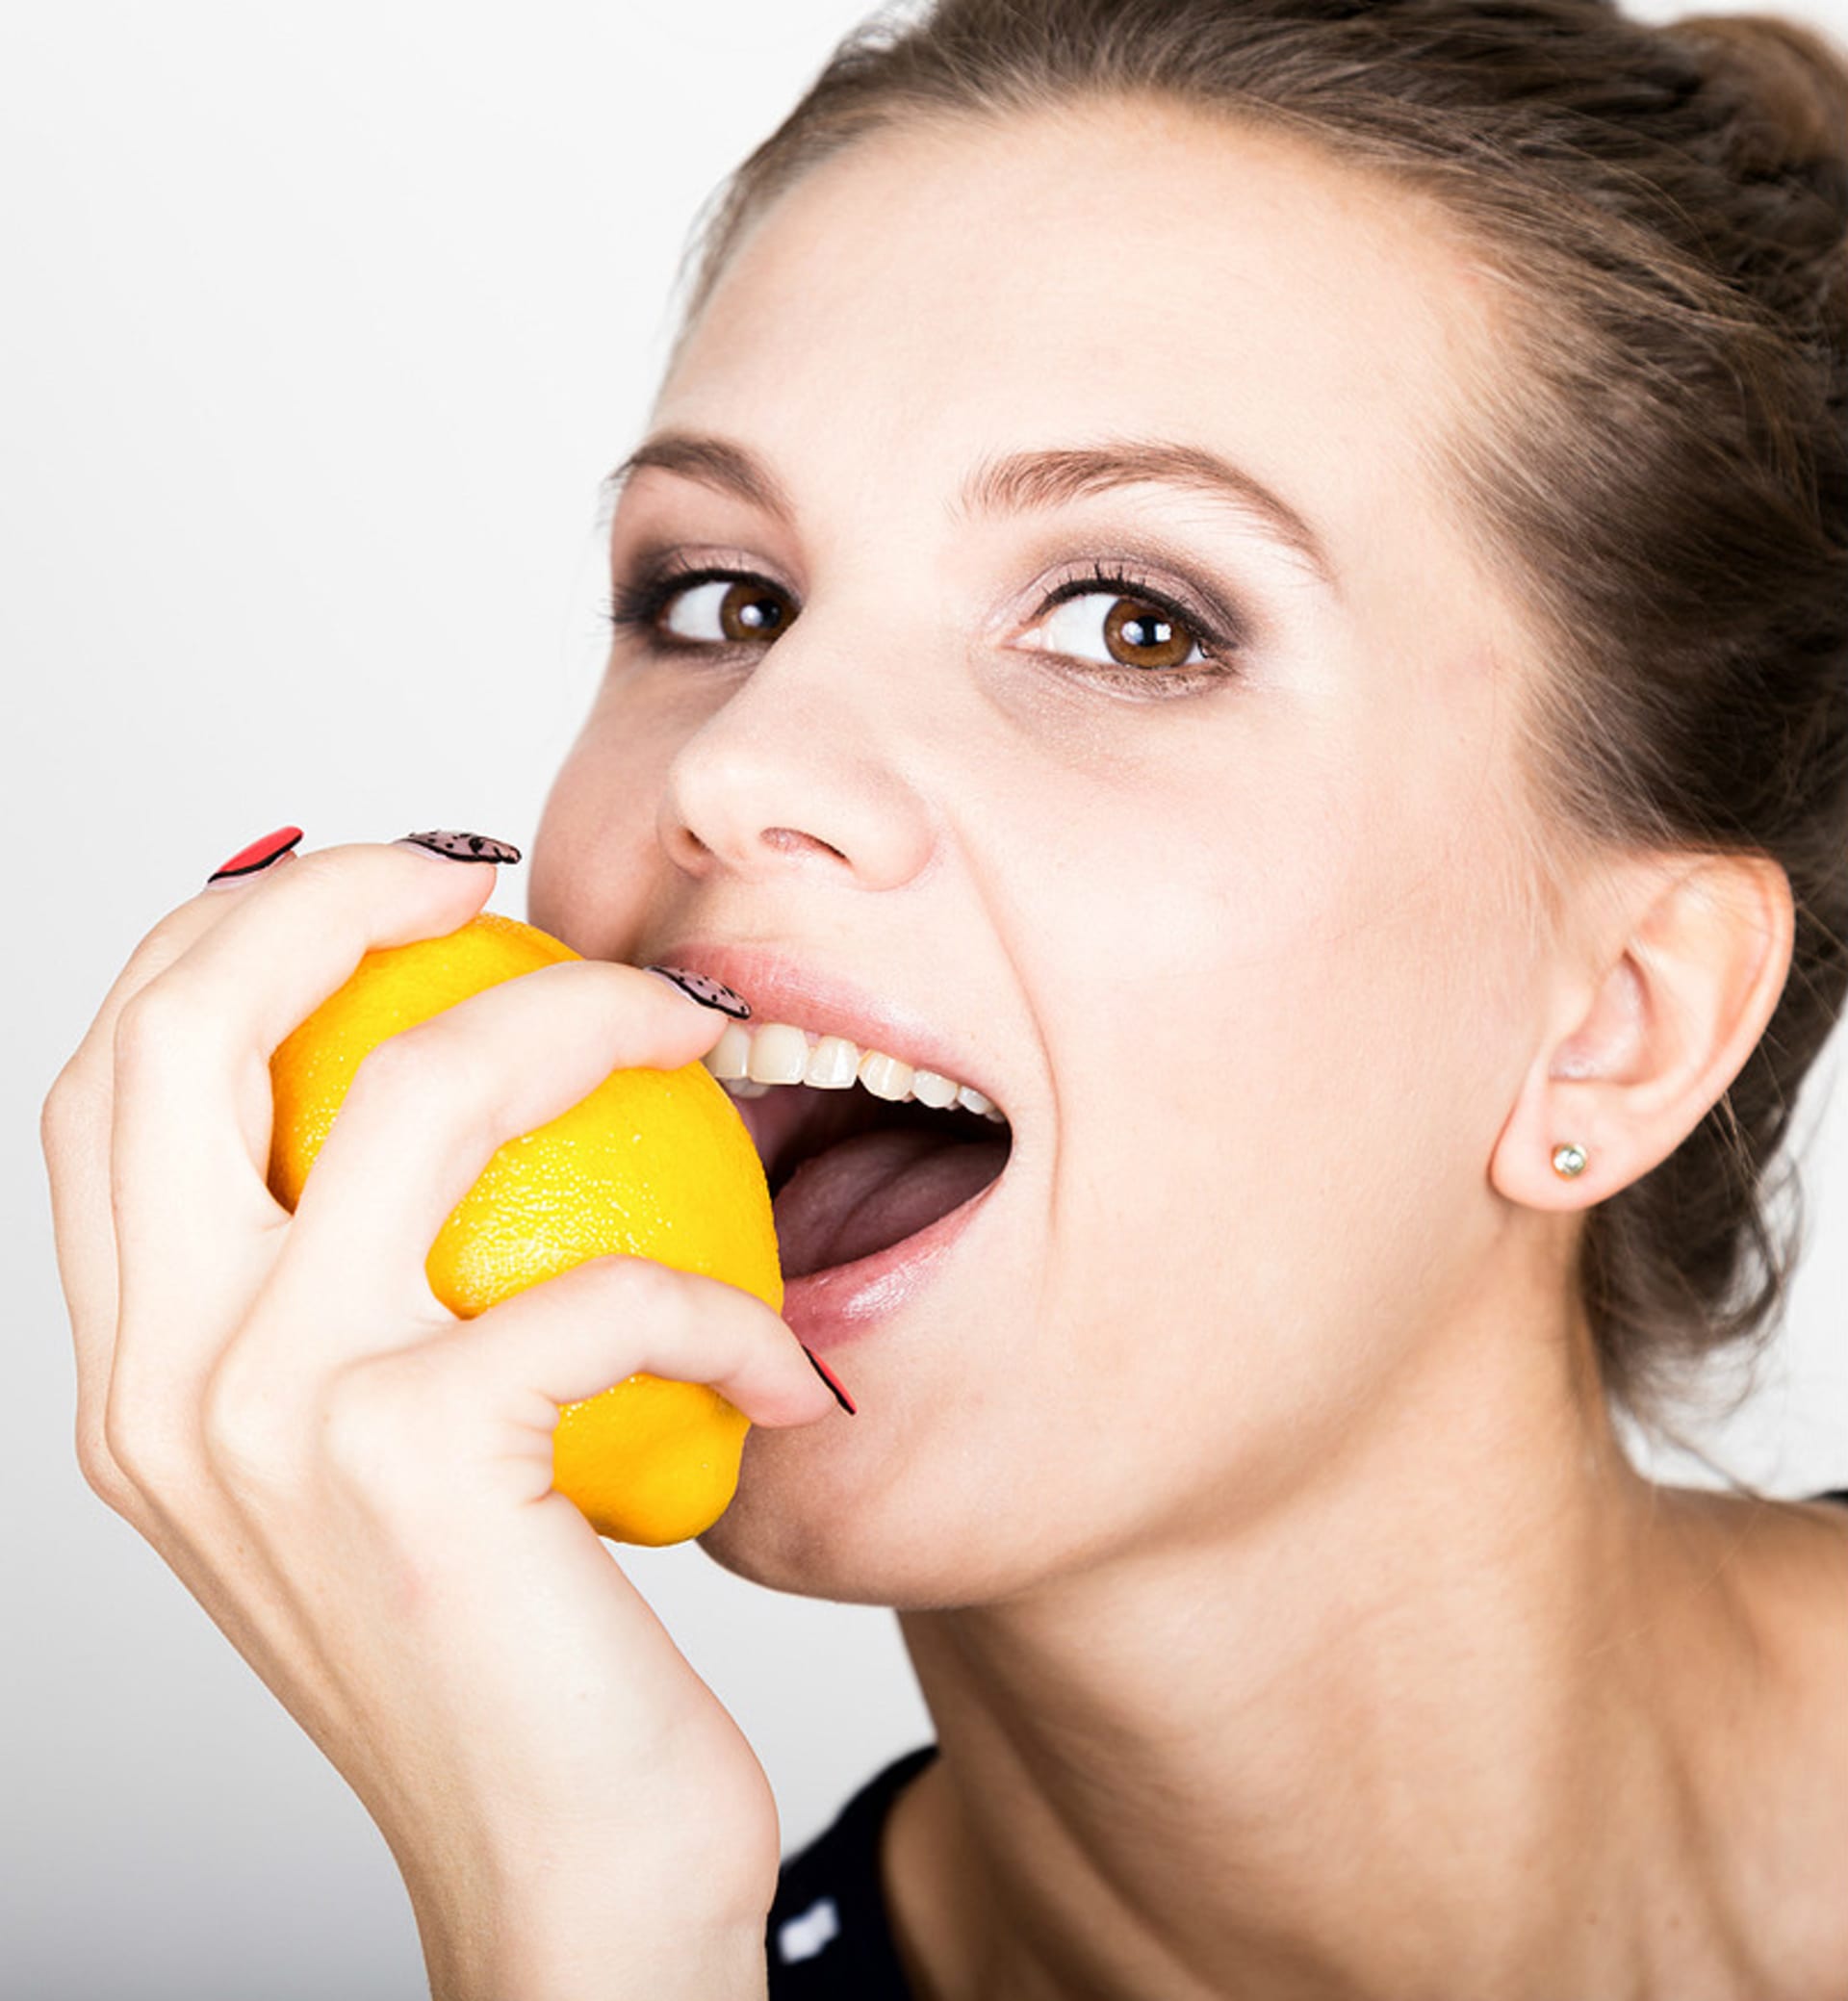 7 úžasných způsobů, jak využít citrón ke zkrášlení pleti rty